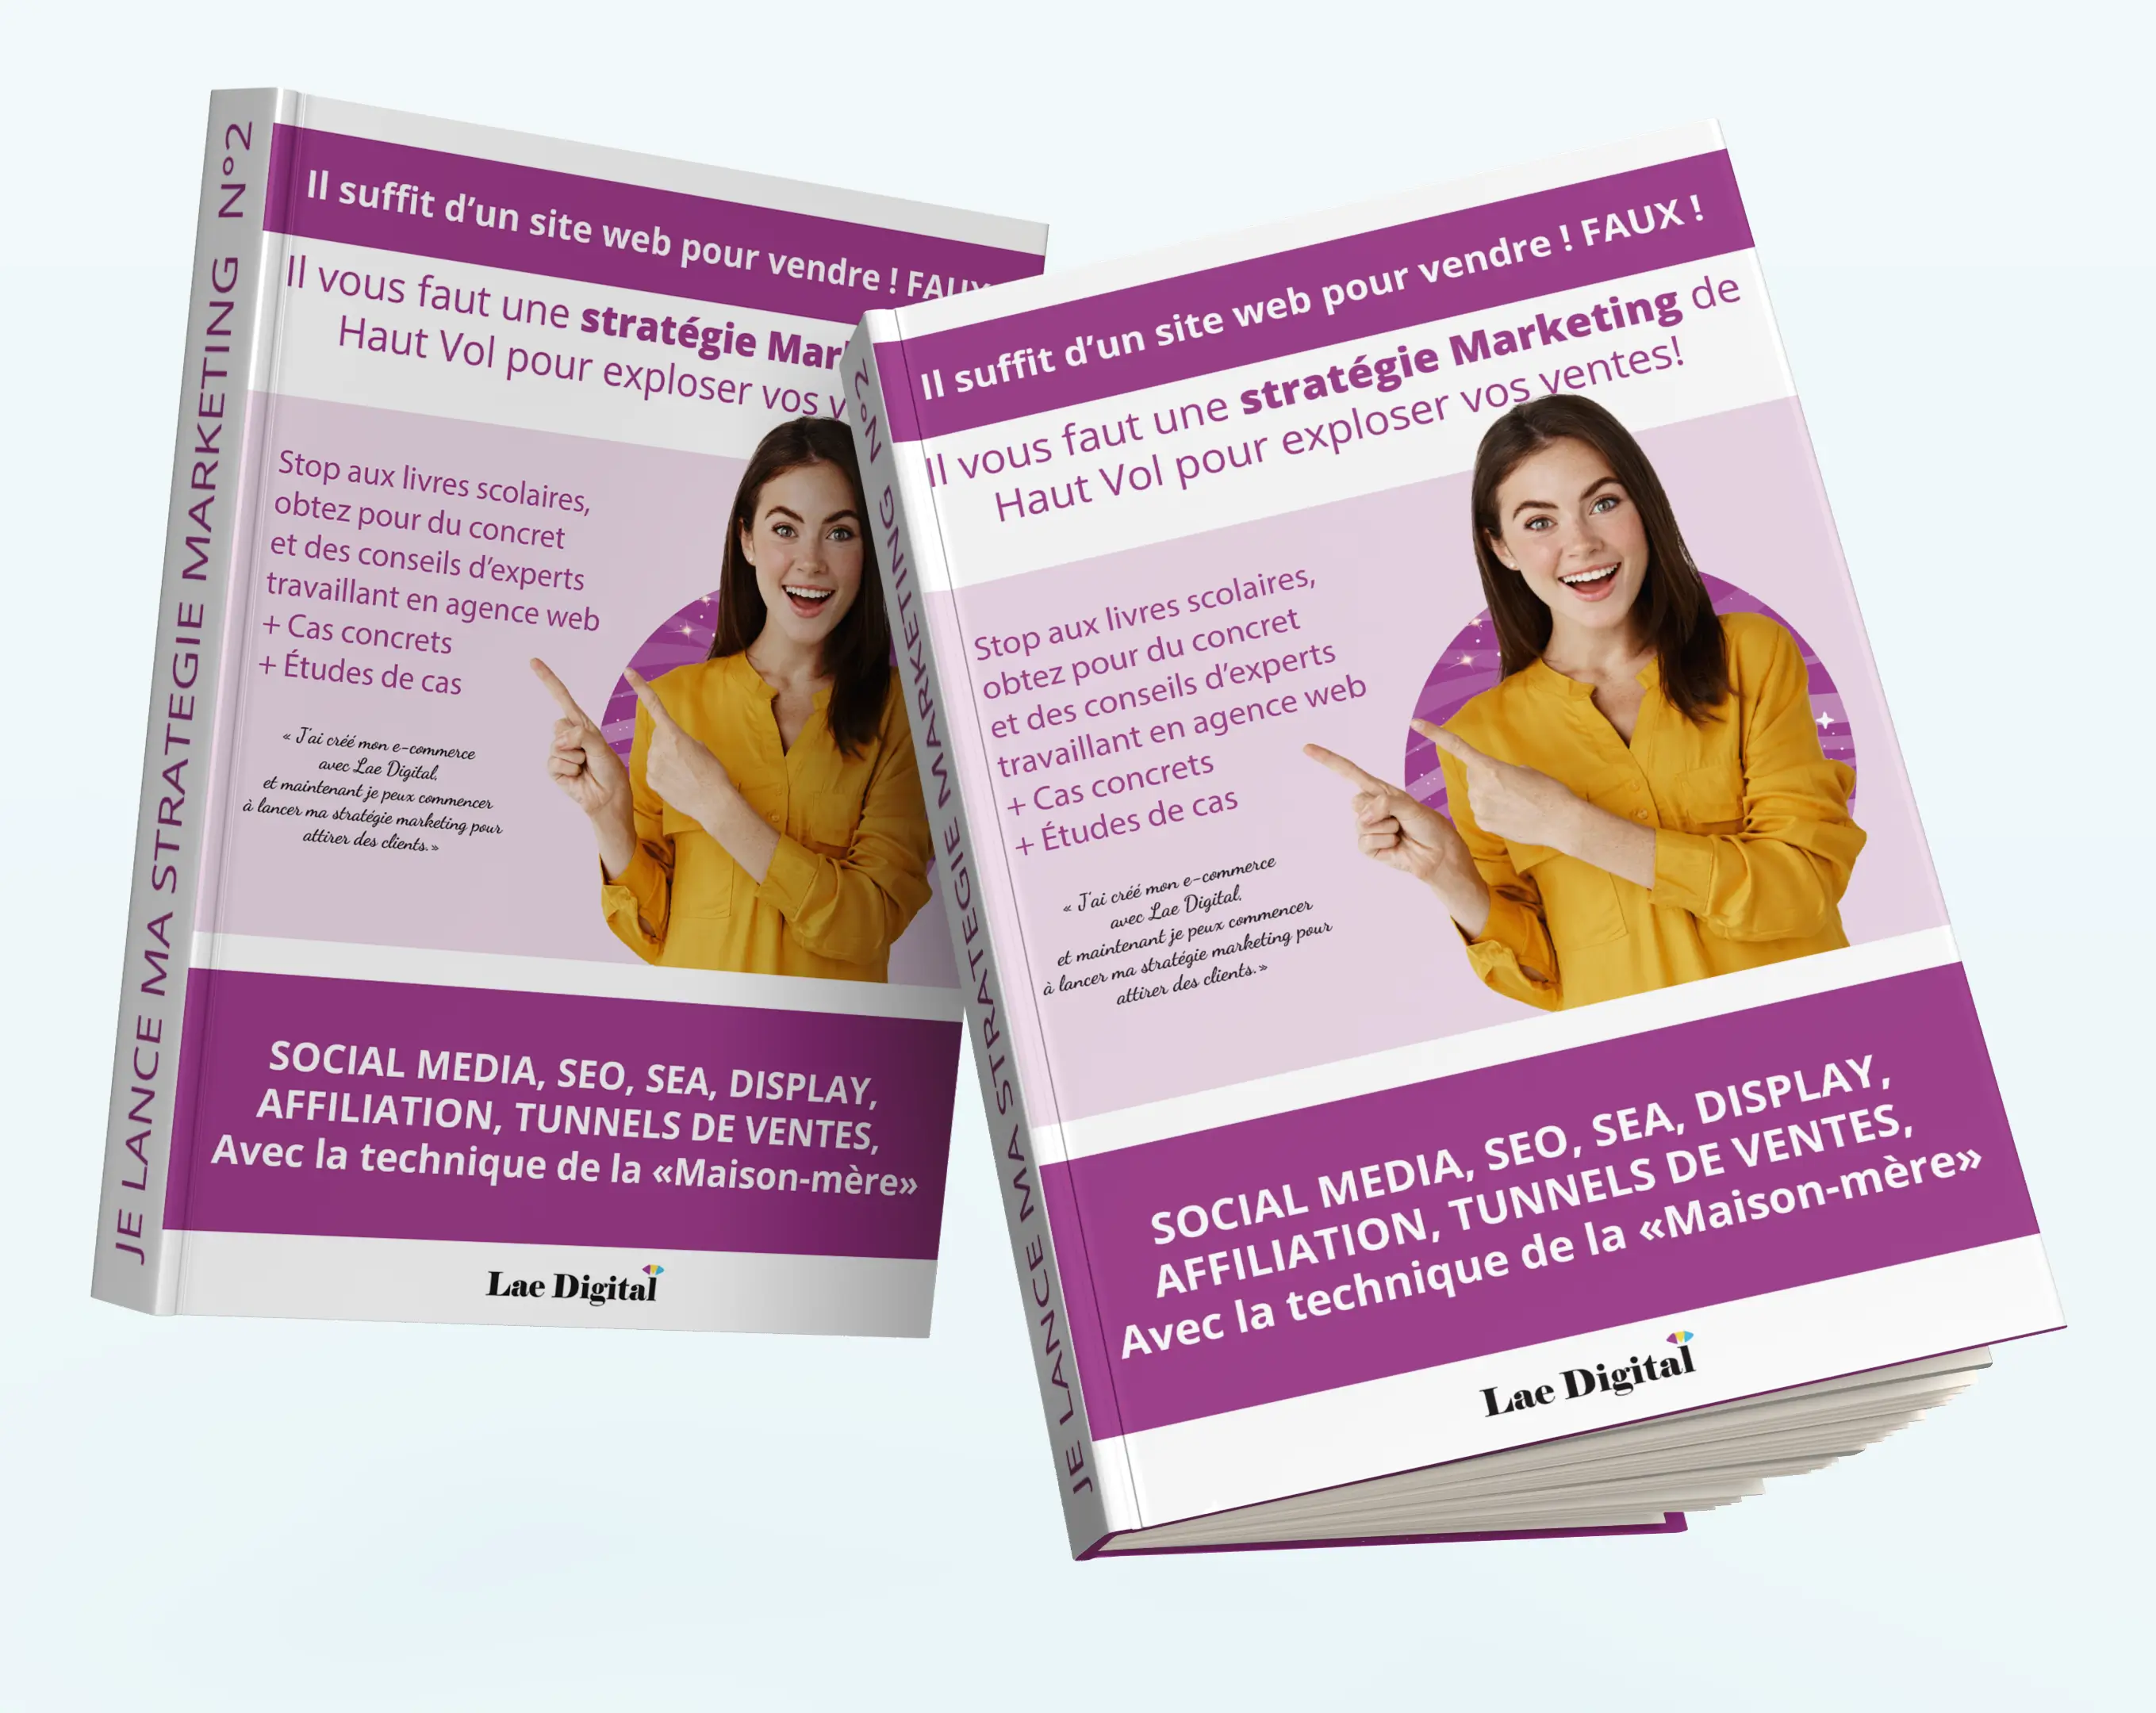 Couverture e-book gratuit "comment mettre en place sa stratégie marketing"